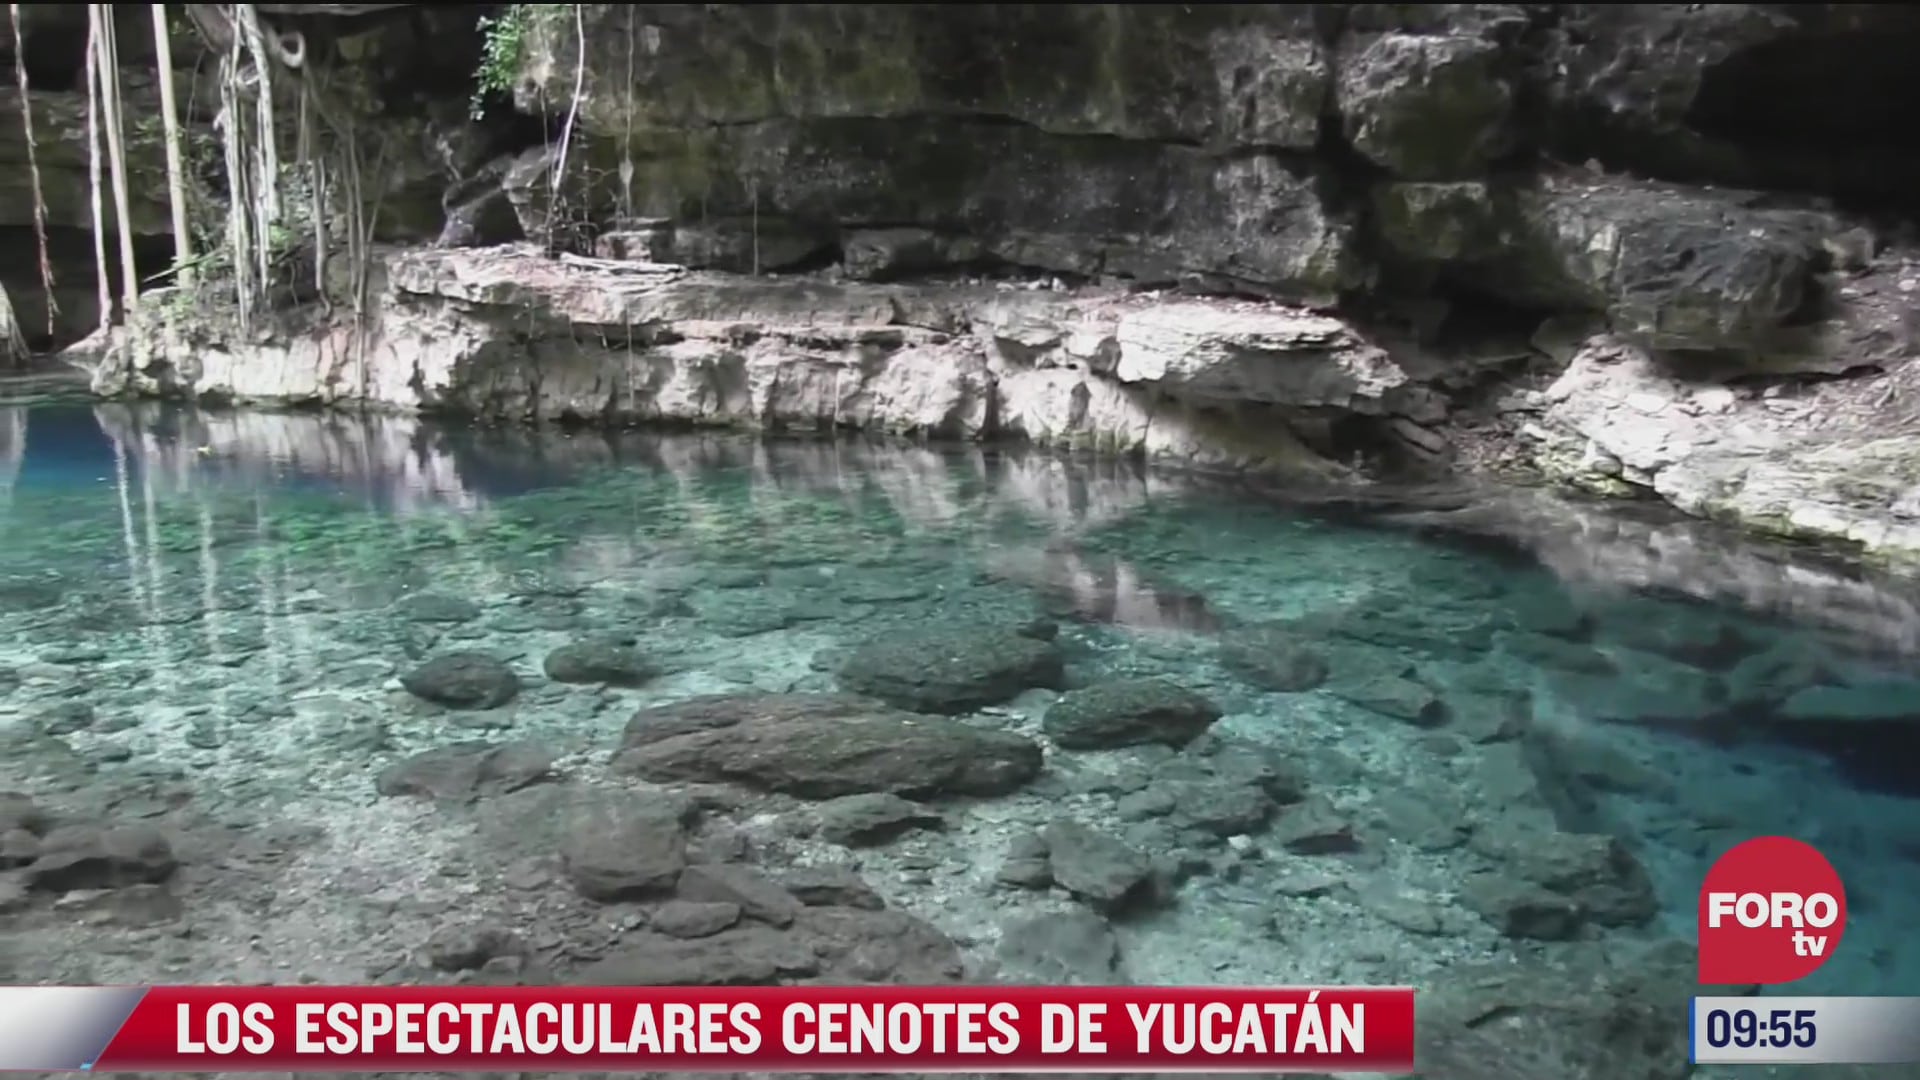 los espectaculares cenotes en yucatan